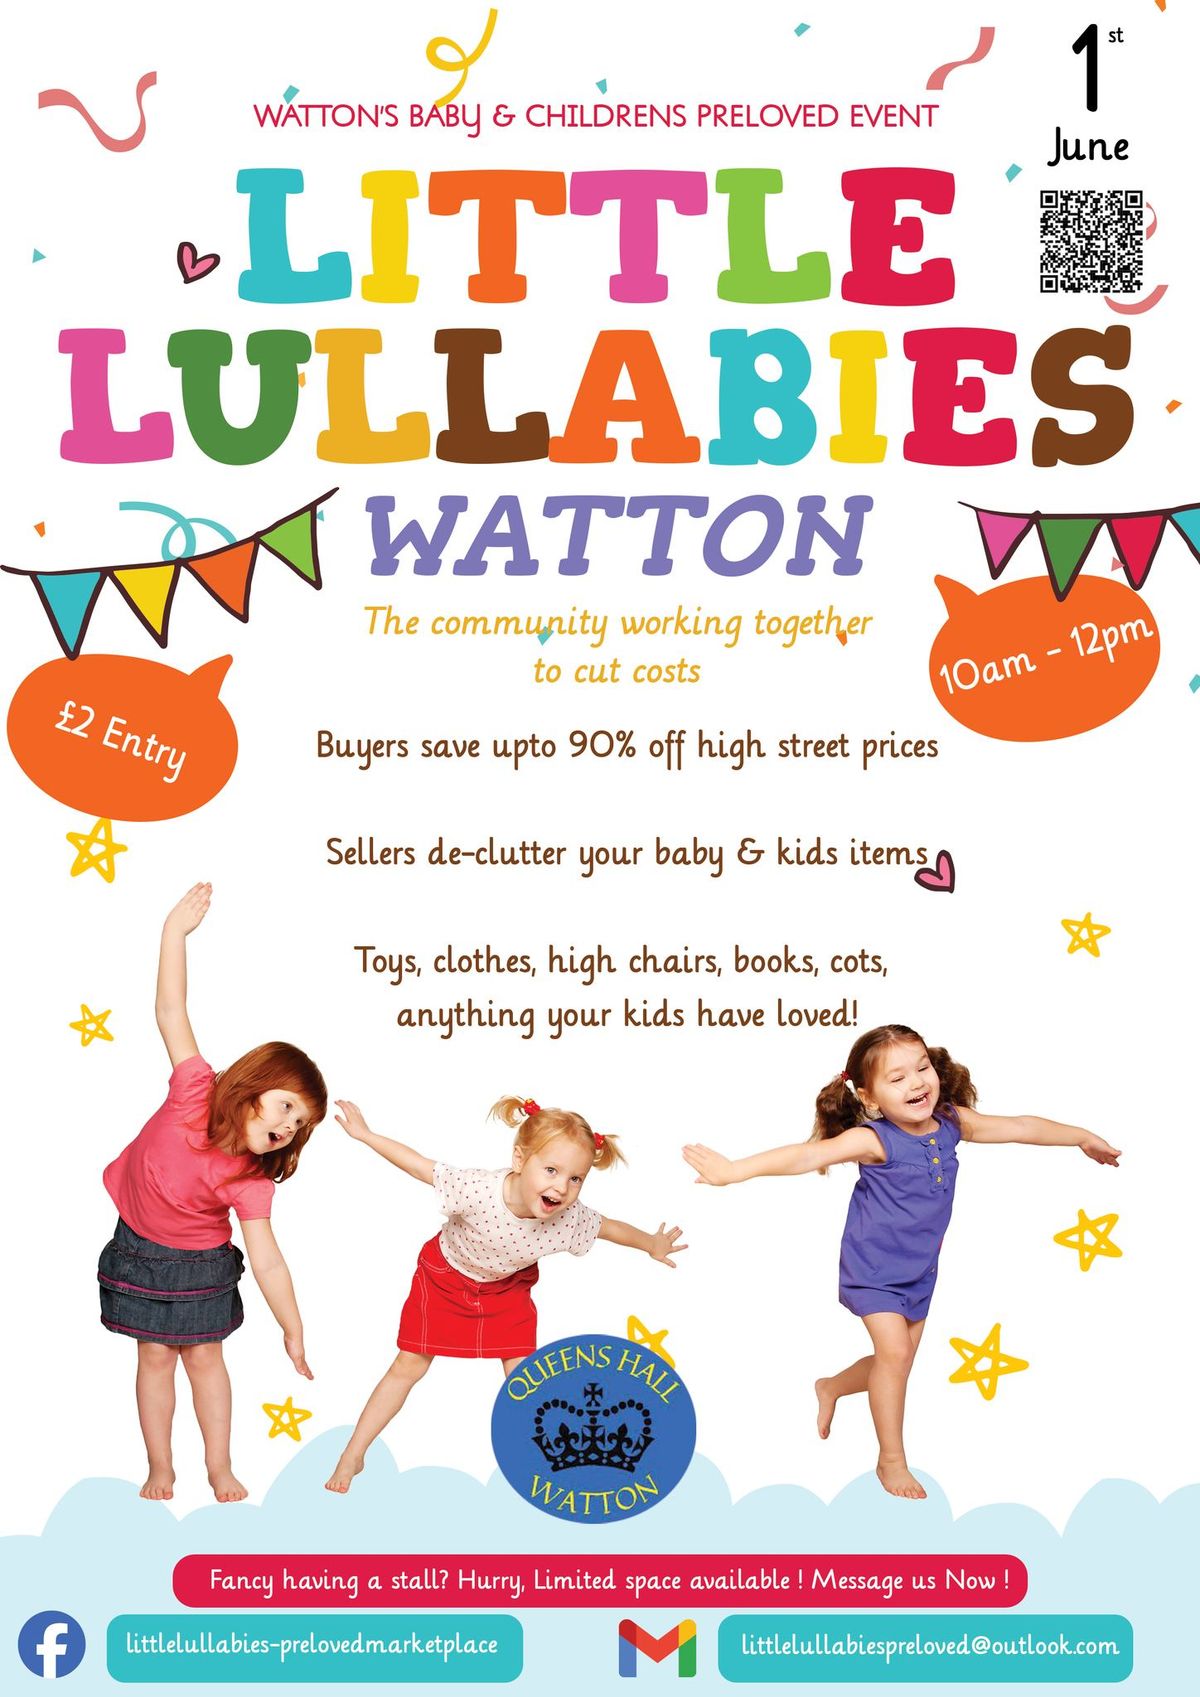 Watton Baby & Children's Preloved Event